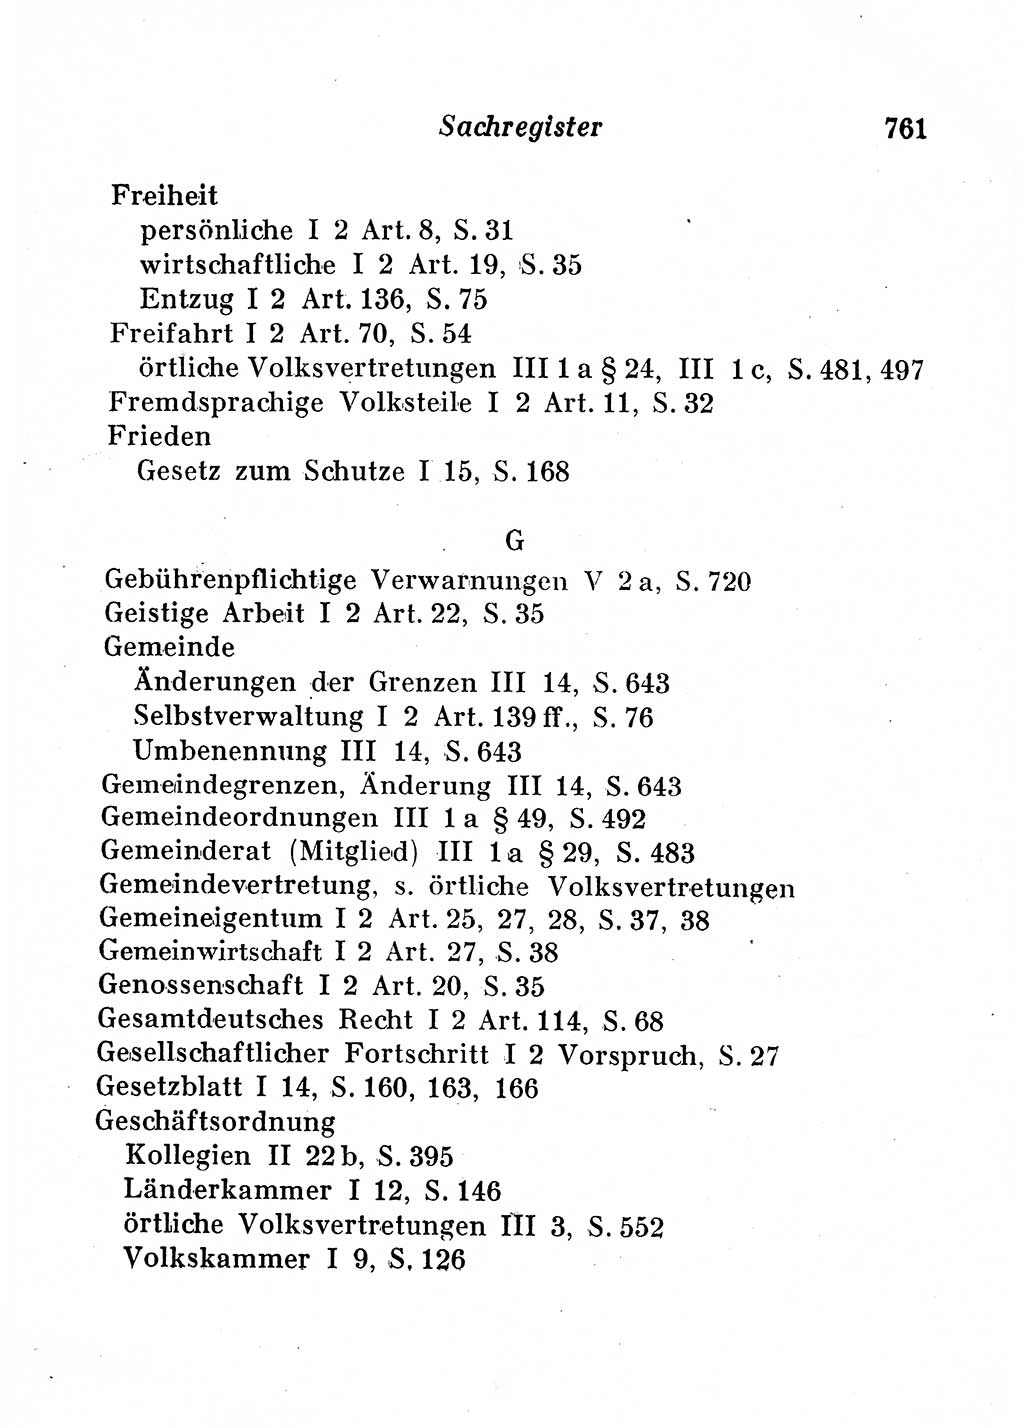 Staats- und verwaltungsrechtliche Gesetze der Deutschen Demokratischen Republik (DDR) 1958, Seite 761 (StVerwR Ges. DDR 1958, S. 761)